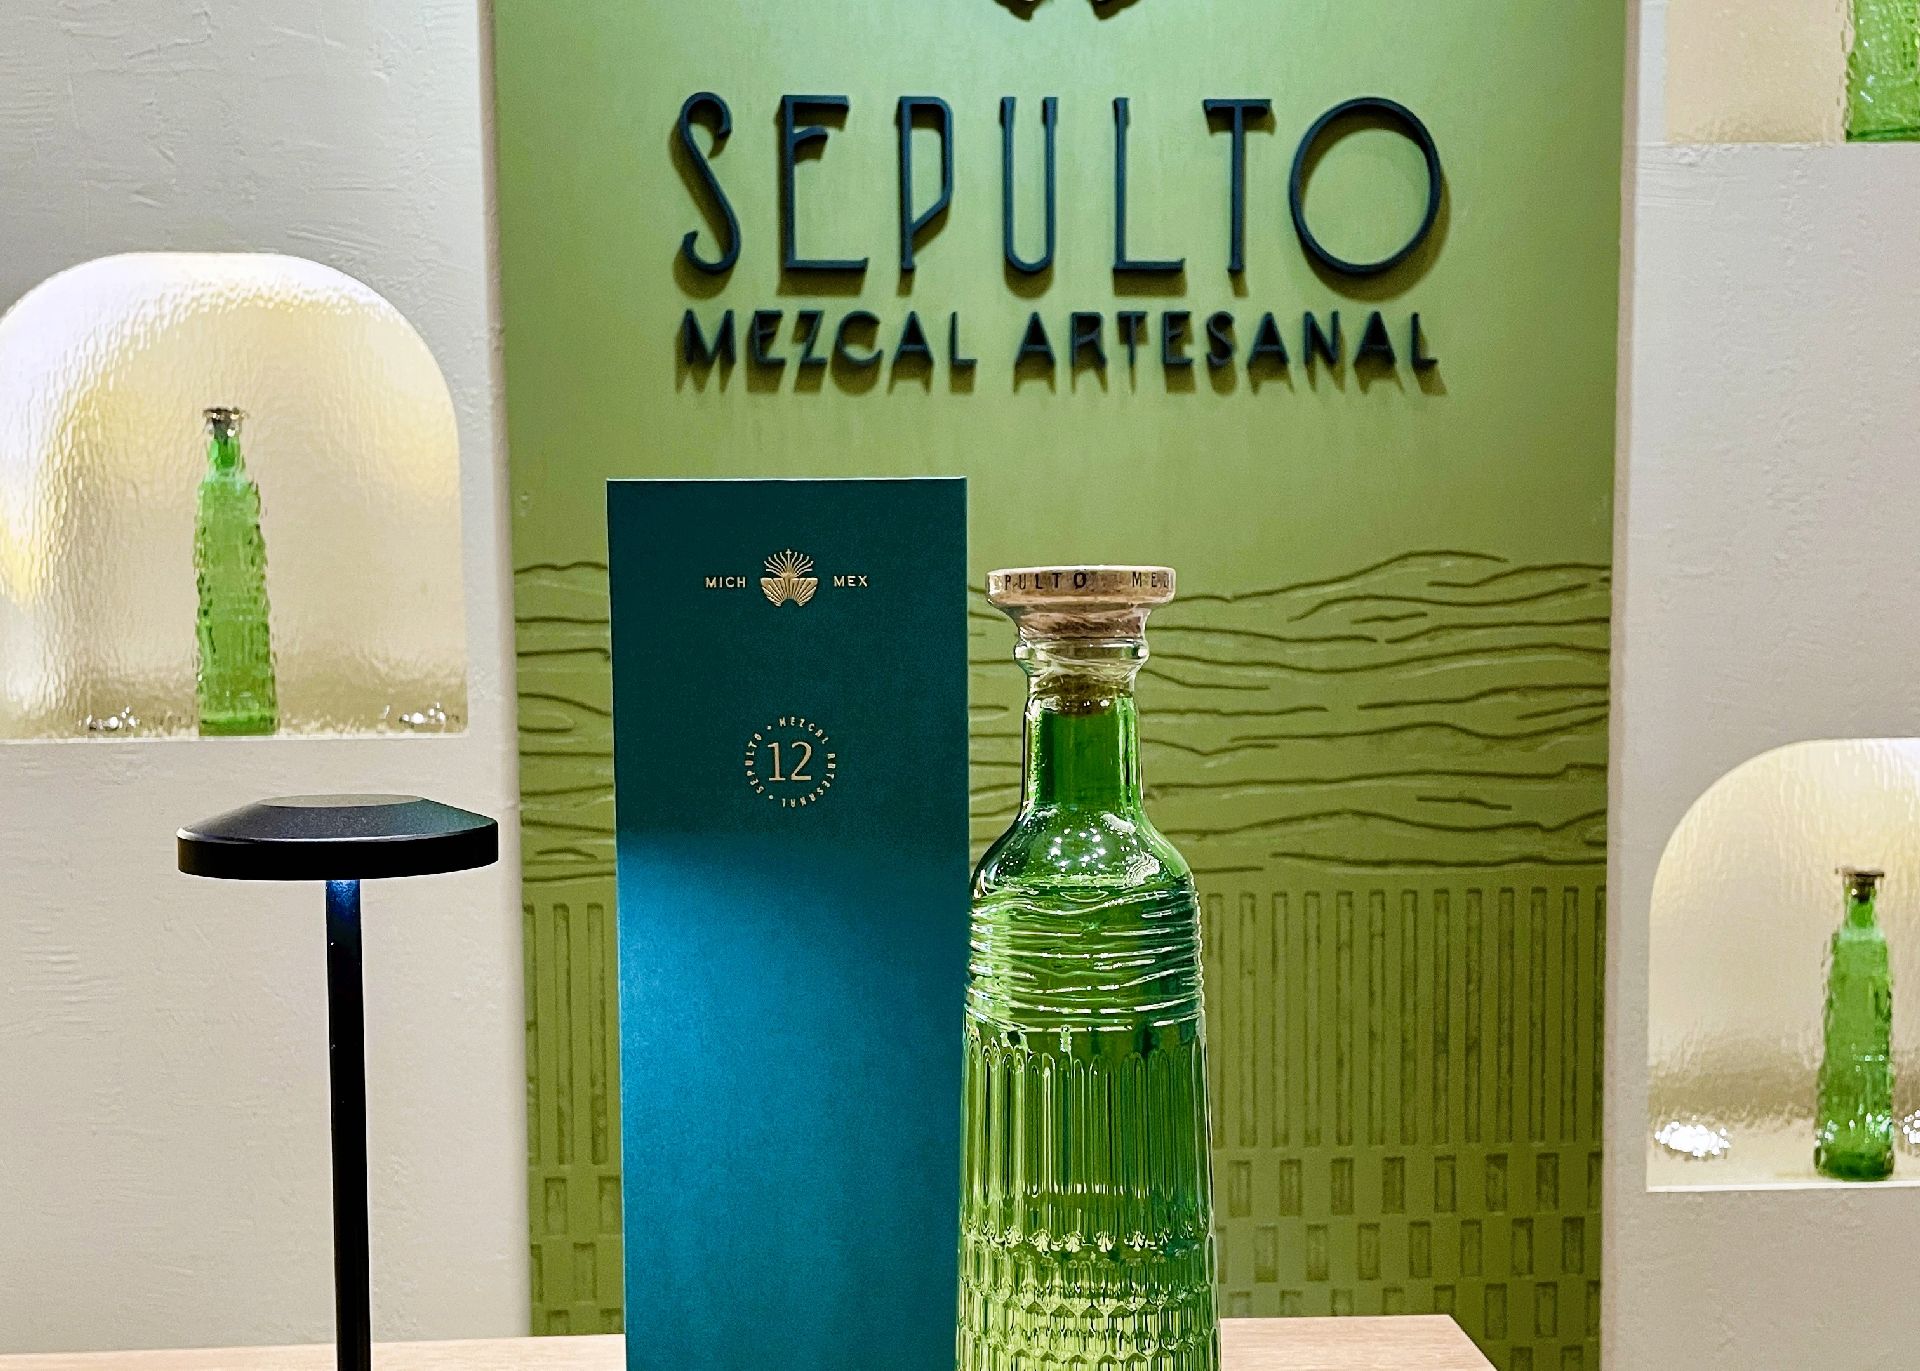 Sepulto Mezcal bottle